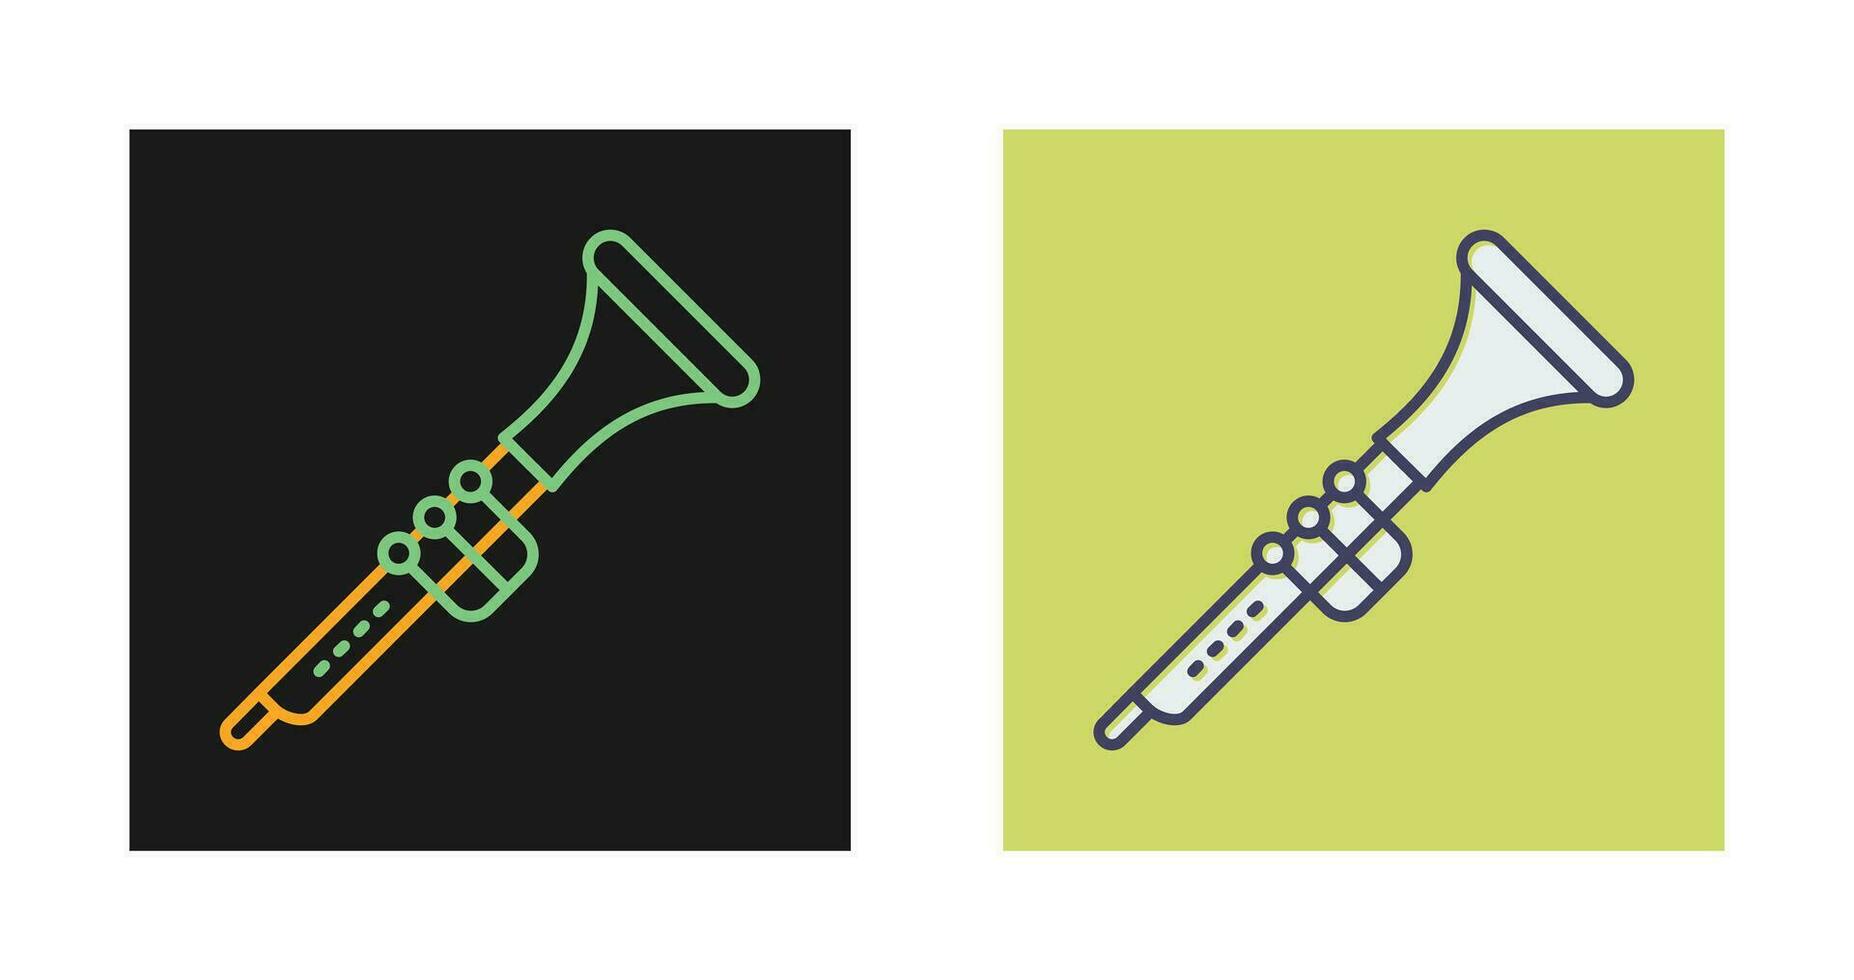 icône de vecteur de clarinette